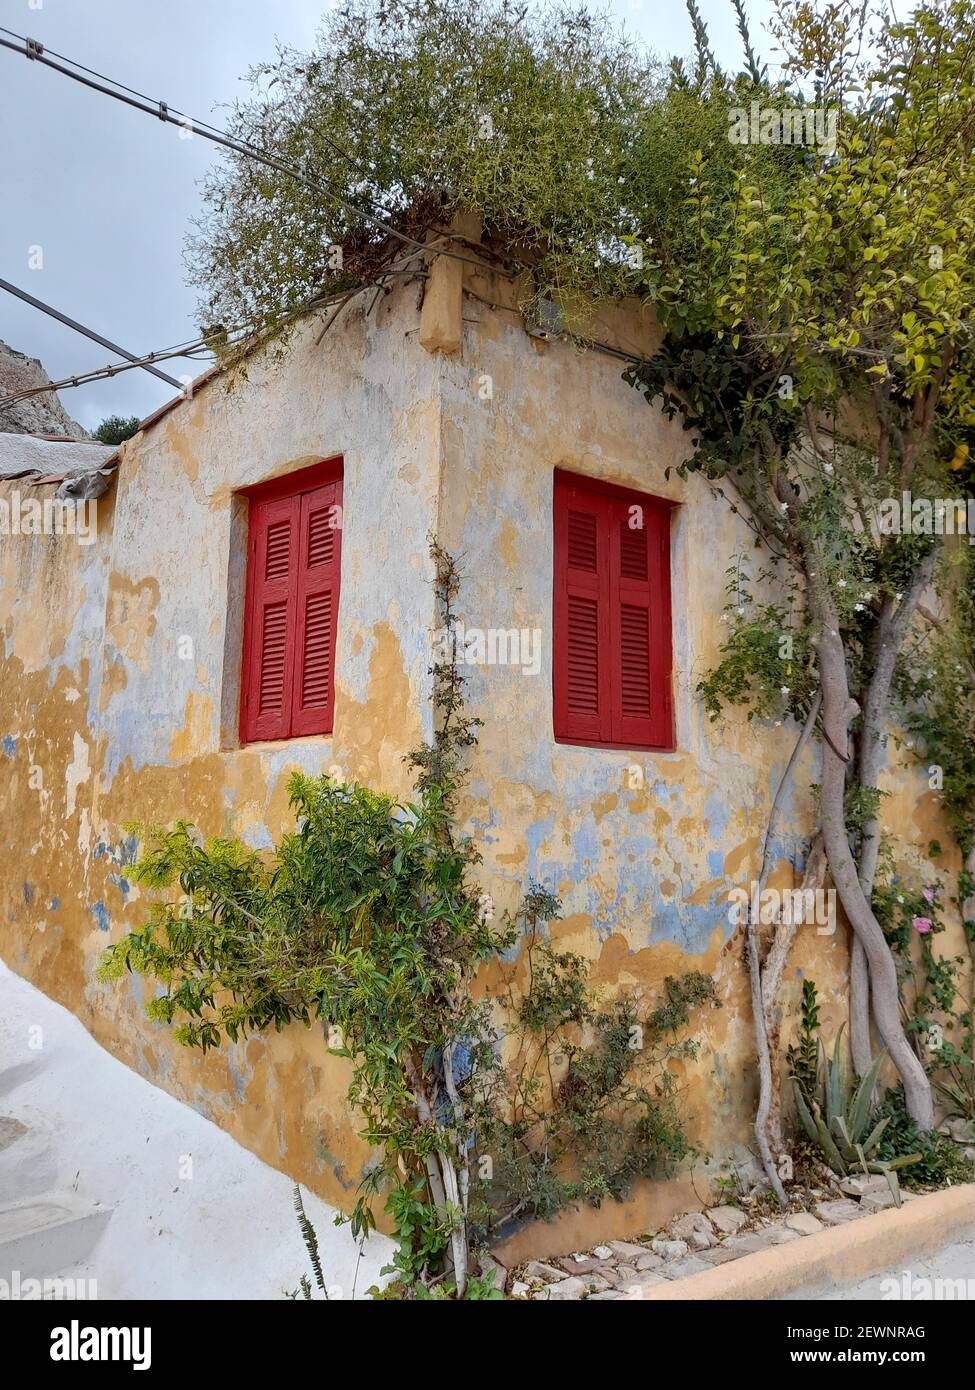 Alter colorfulf Wand eines alten Hauses im malerischen Bezirk von Anafiotika, in Plaka, der Altstadt von Athen, Hauptstadt von Griechenland, Europa Stockfoto